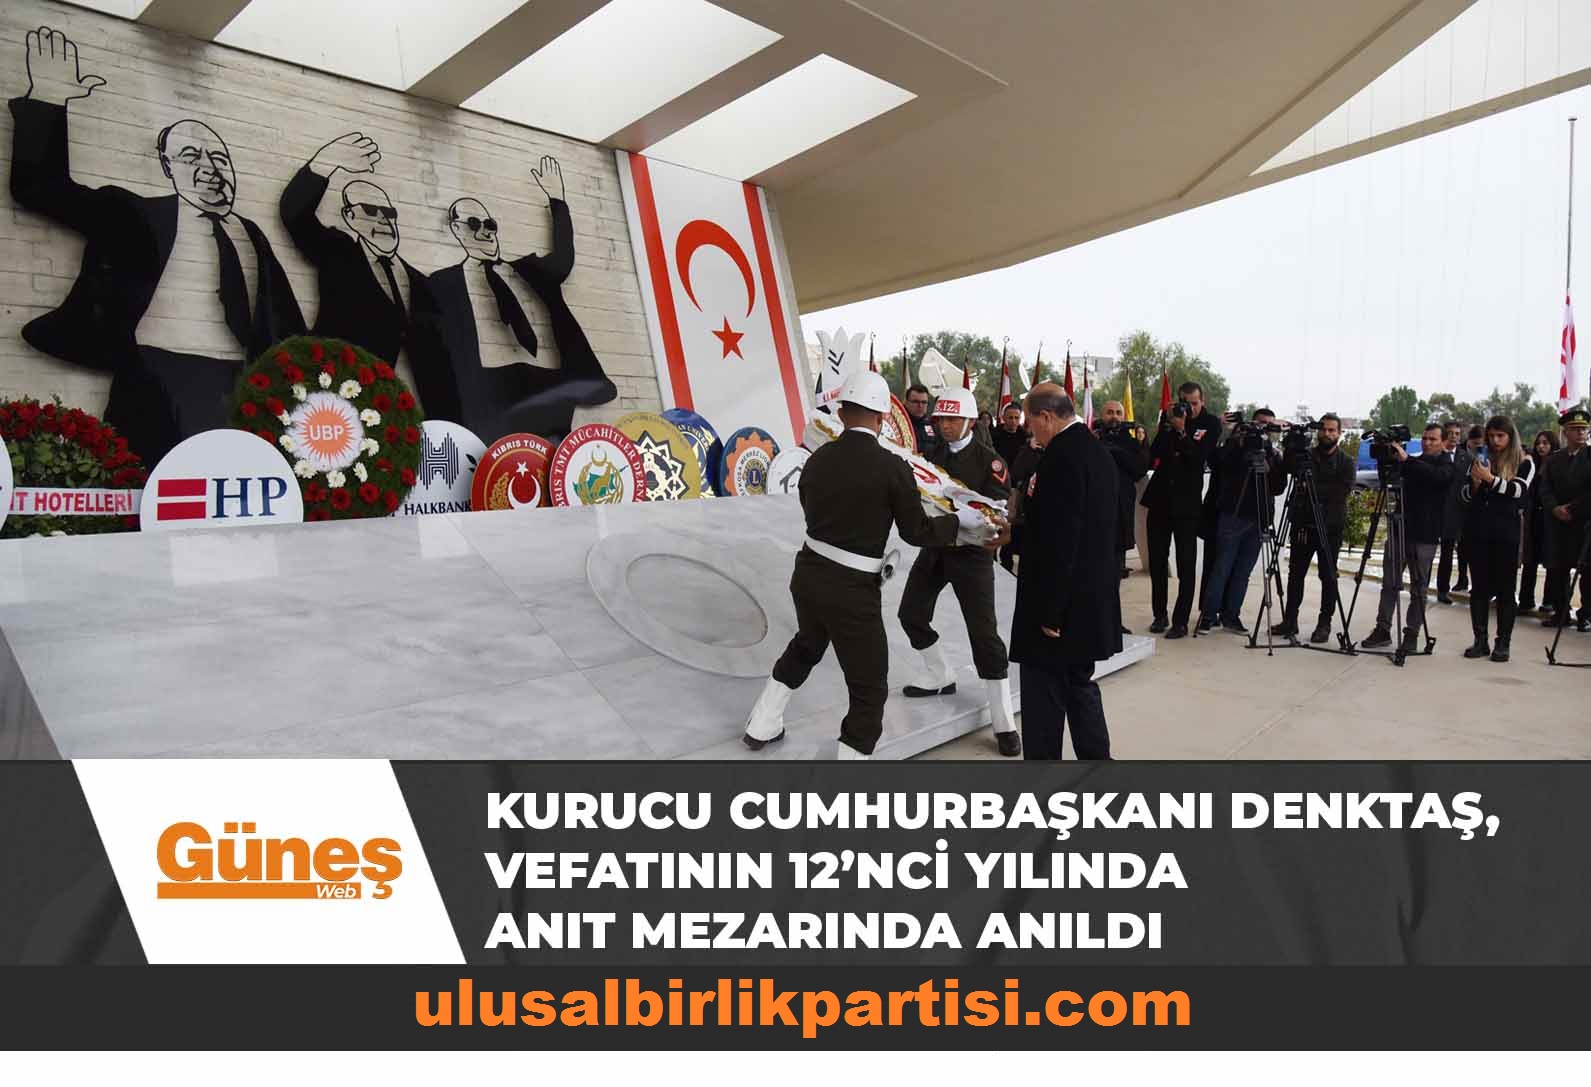 Read more about the article Kurucu Cumhurbaşkanı Denktaş, vefatının 12’nci yılında anıt mezarında anıldı